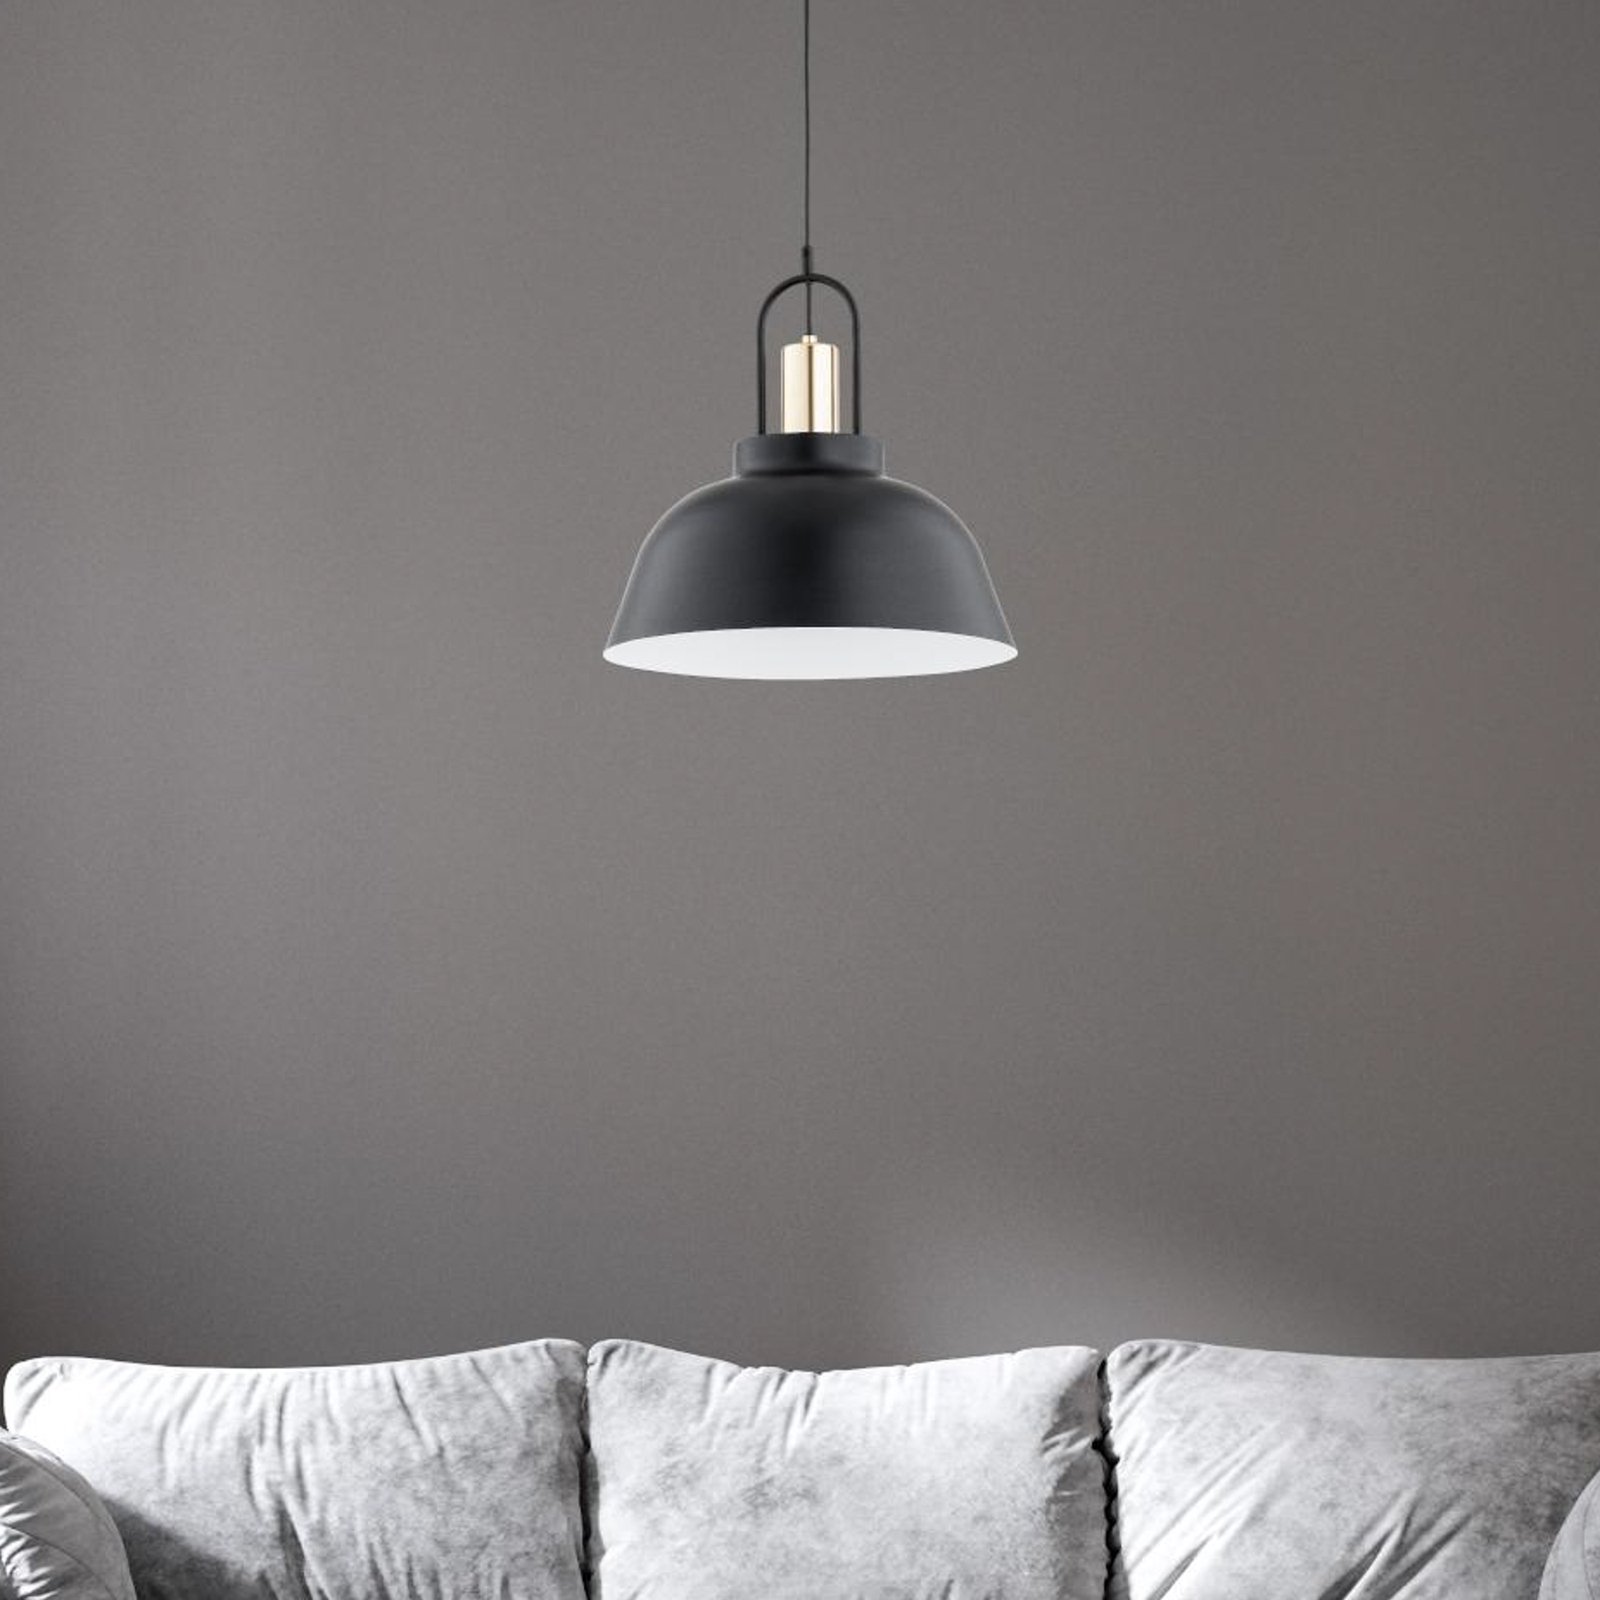 Hanglamp Mirave, zwart/goudkleurig, Ø 39,5 cm, metaal